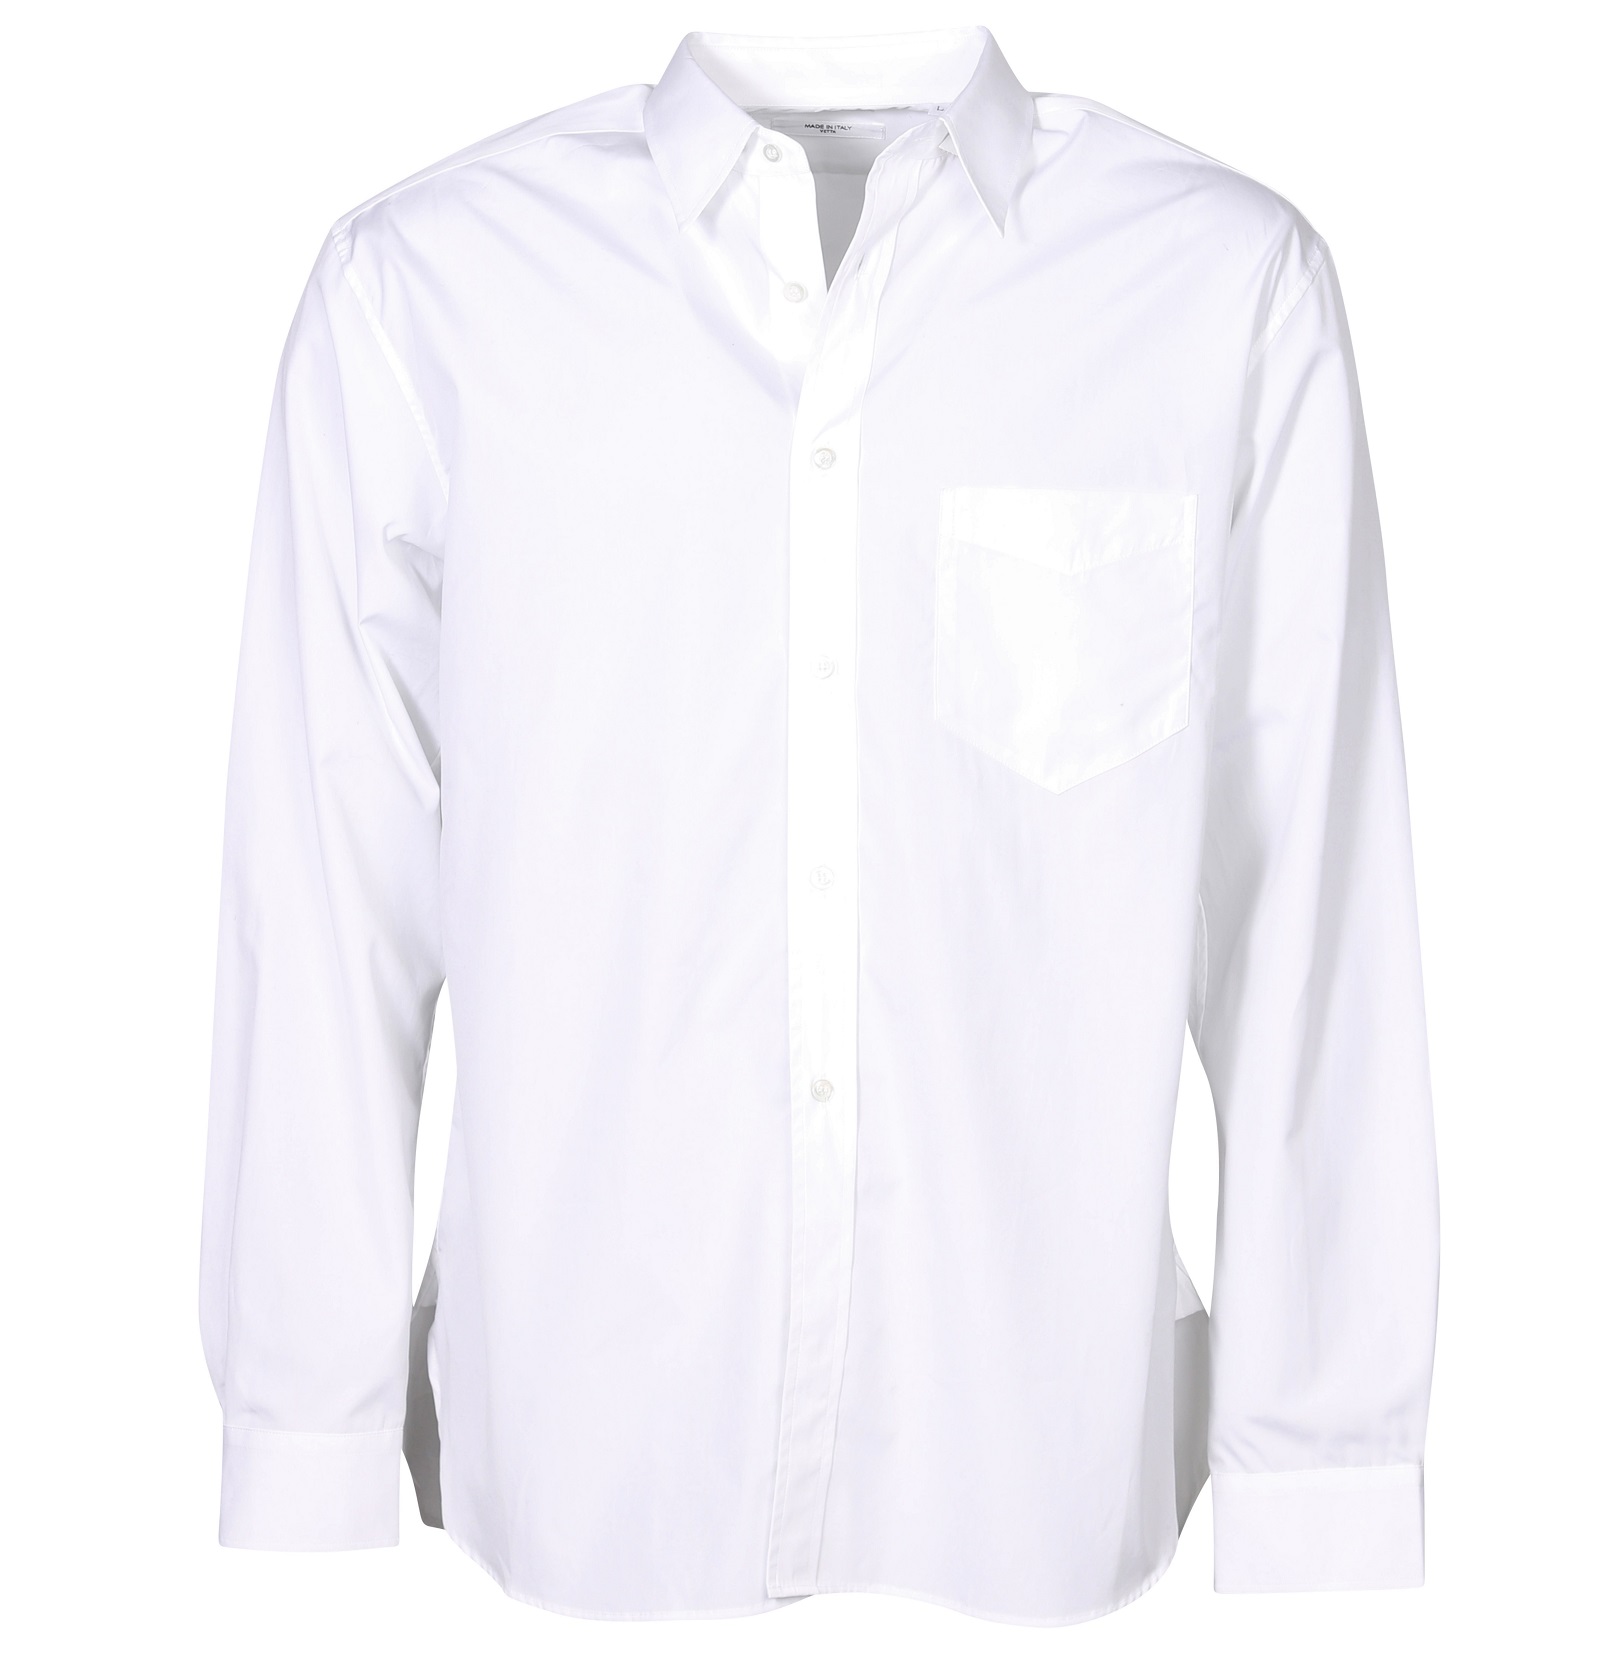 CELLAR DOOR Cotton Shirt in White S